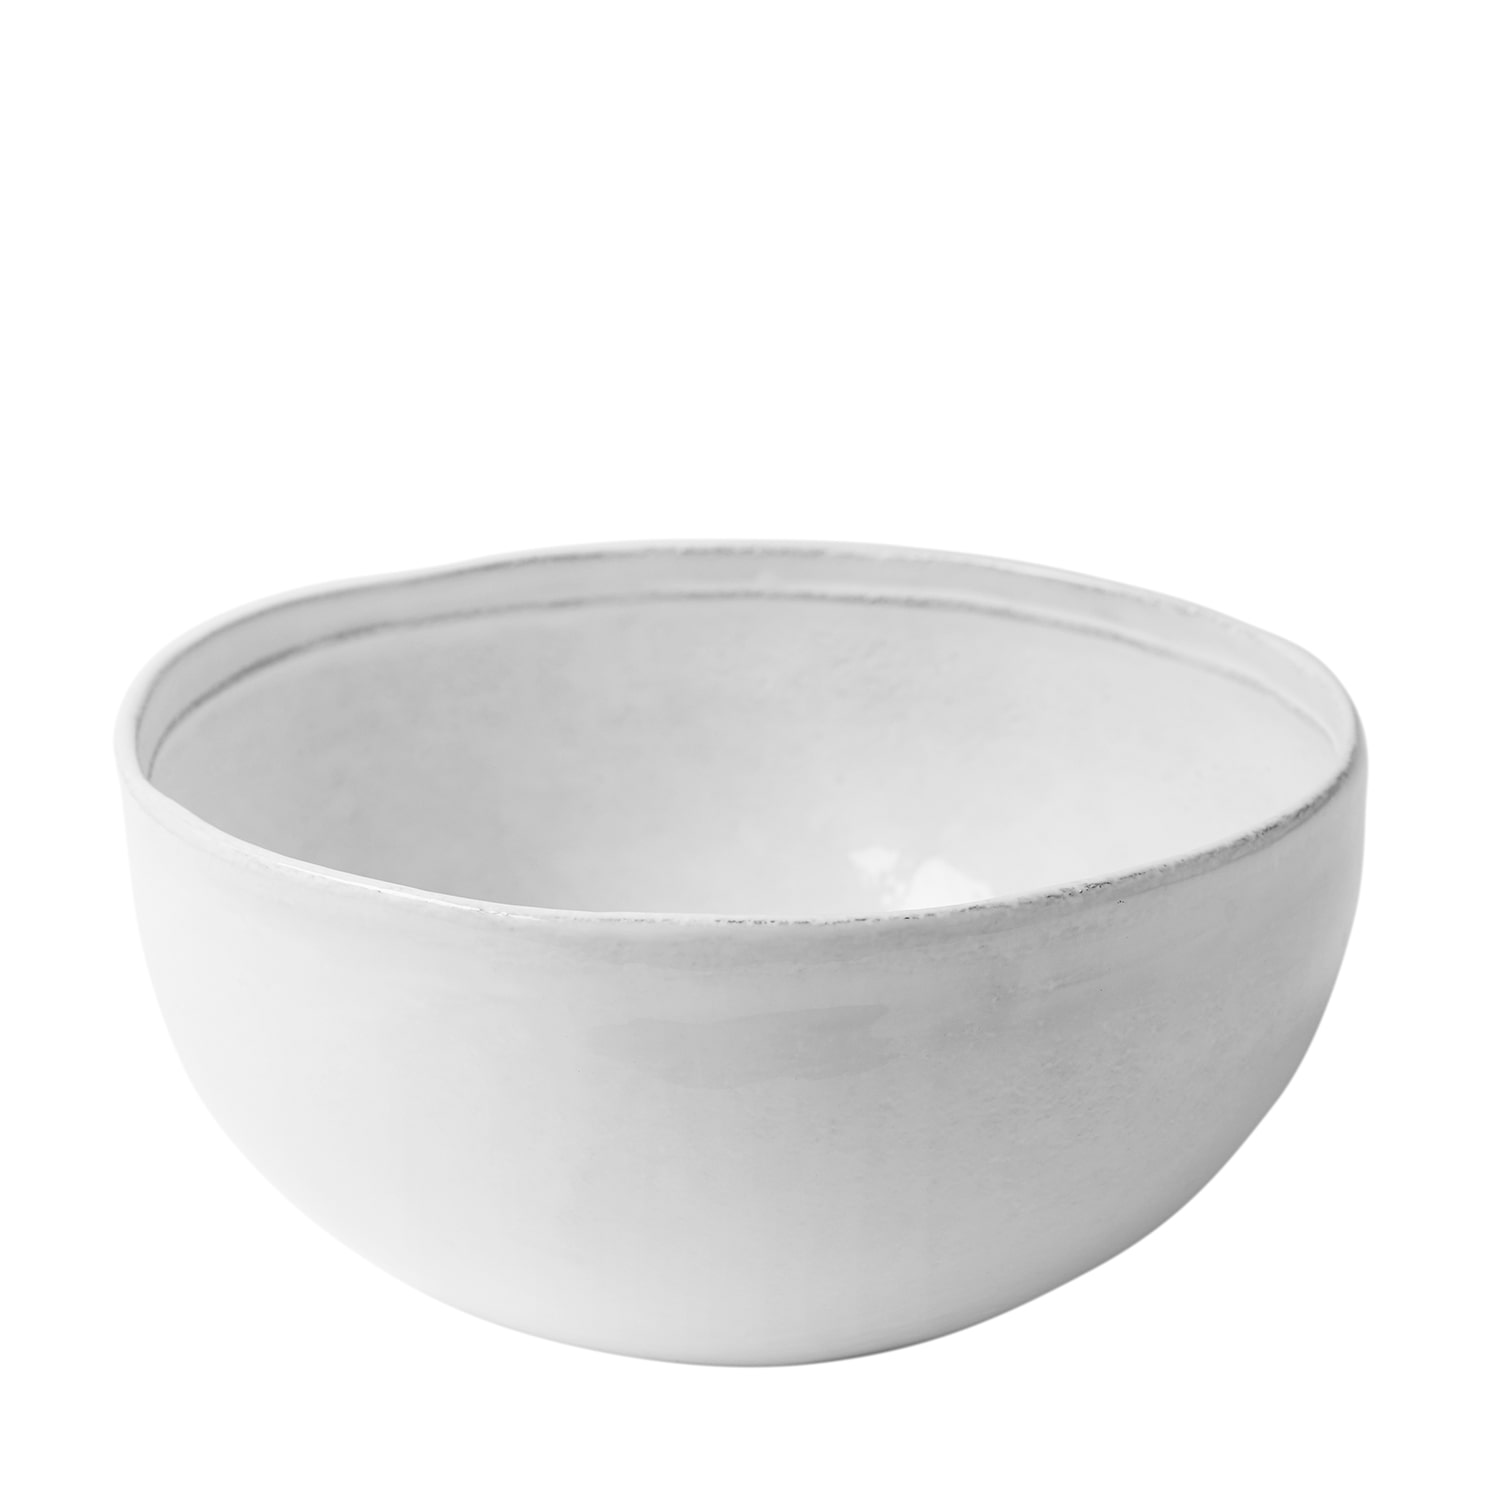 [Simple] Medium Salad Bowl